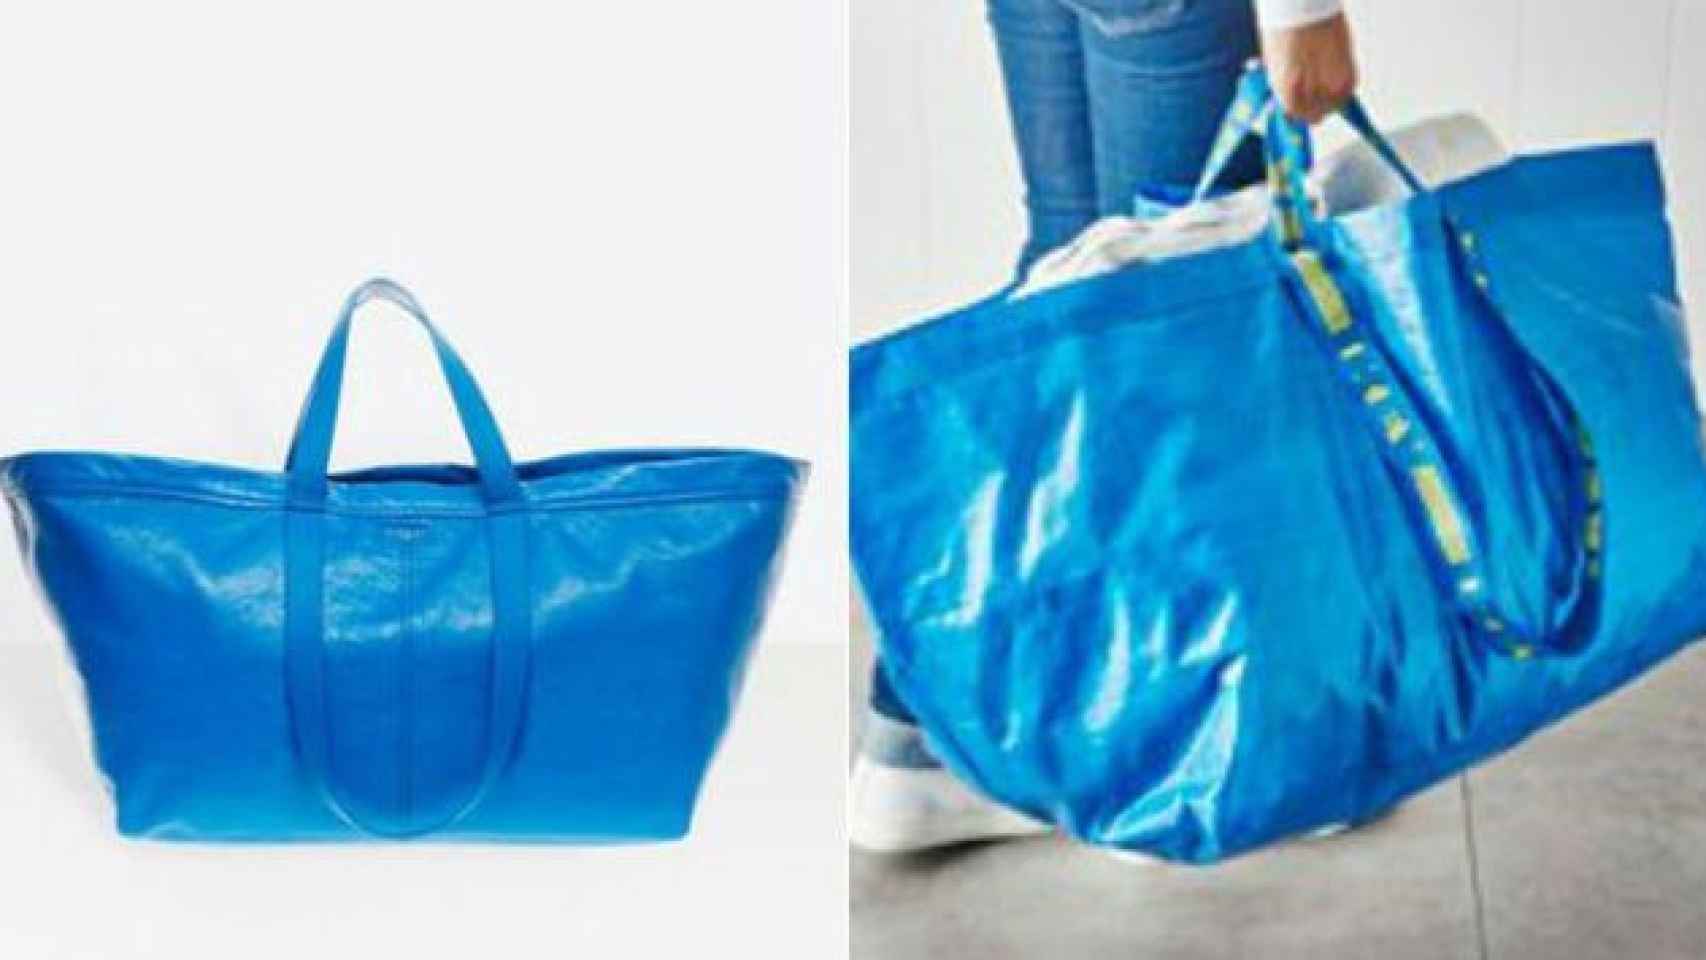 El bolso de Balenciaga recuerda a la bolsa de IKEA